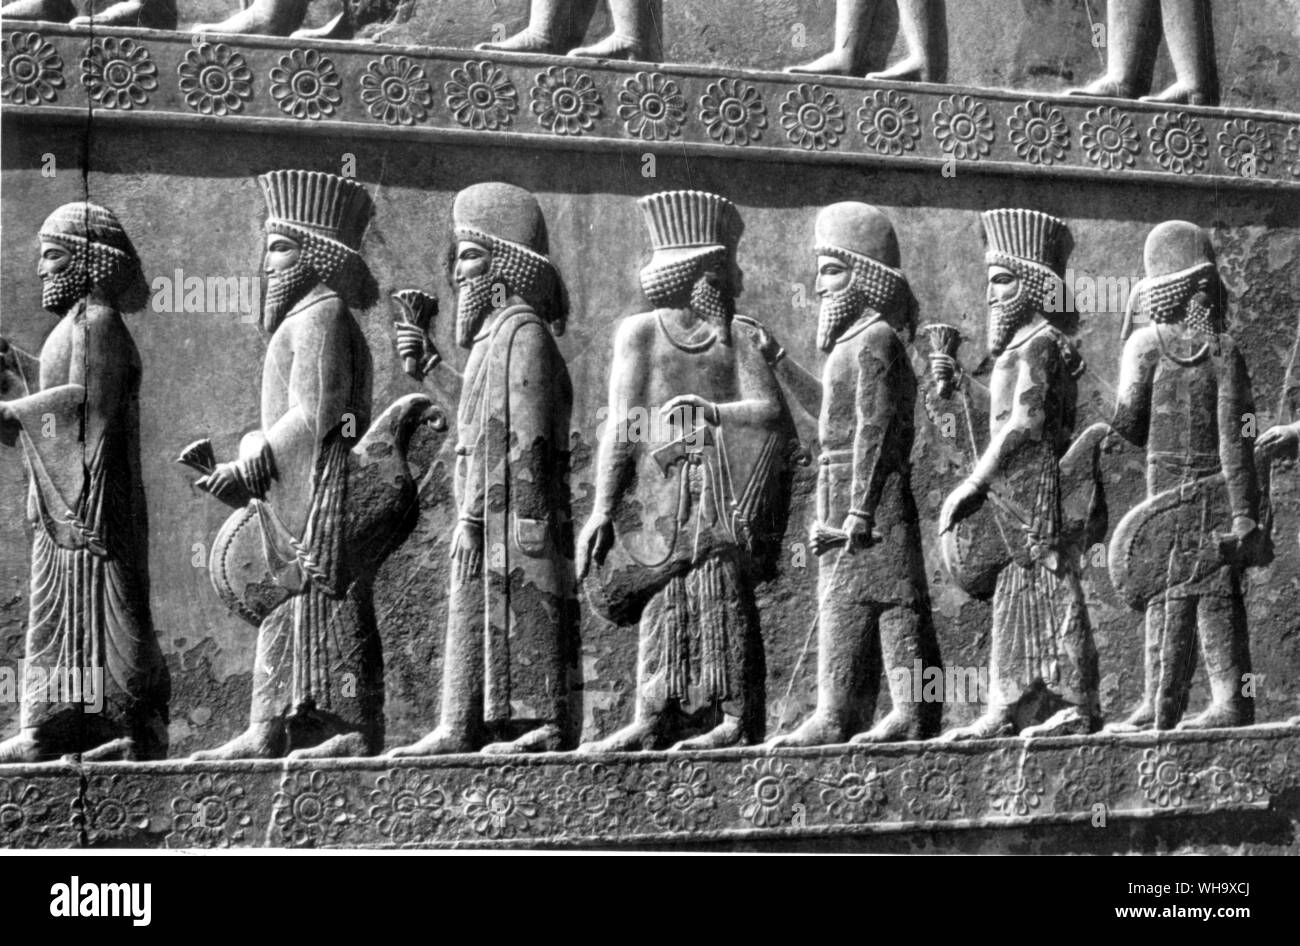 Los persas llevan largas túnicas y sombreros de copa estriada; los medos desgaste coates y pantalones. Foto de stock